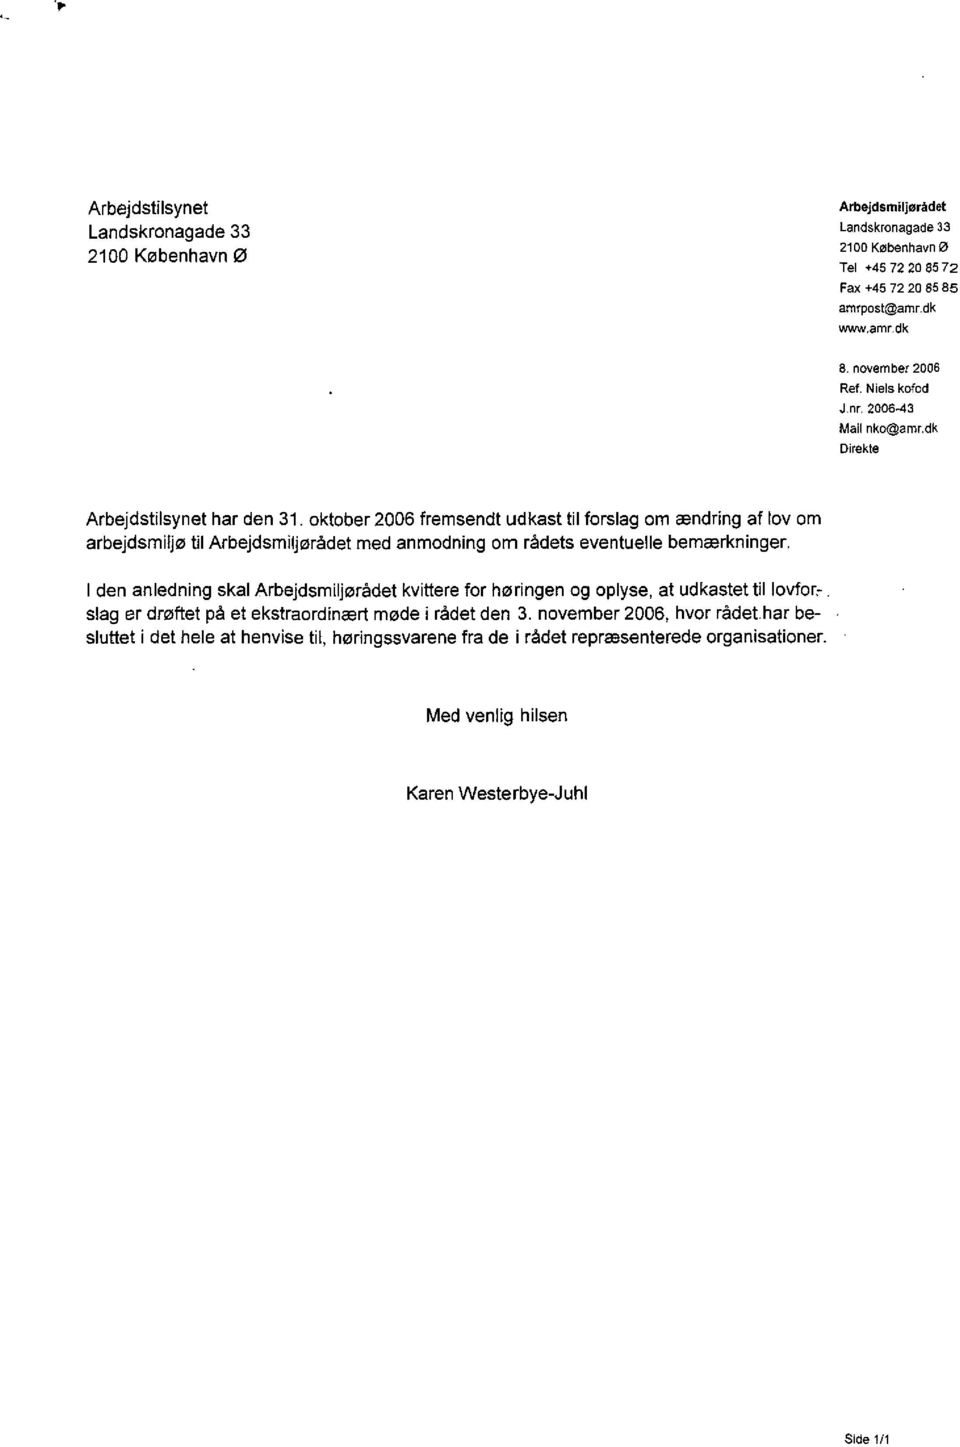 oktober 2006 fremsendt udkast til forslag om ændring af tov om arbejdsmiljø til Arbejdsmiljørådet med anmodning om rådets eventuelle bemærkninger, l den anledning skal